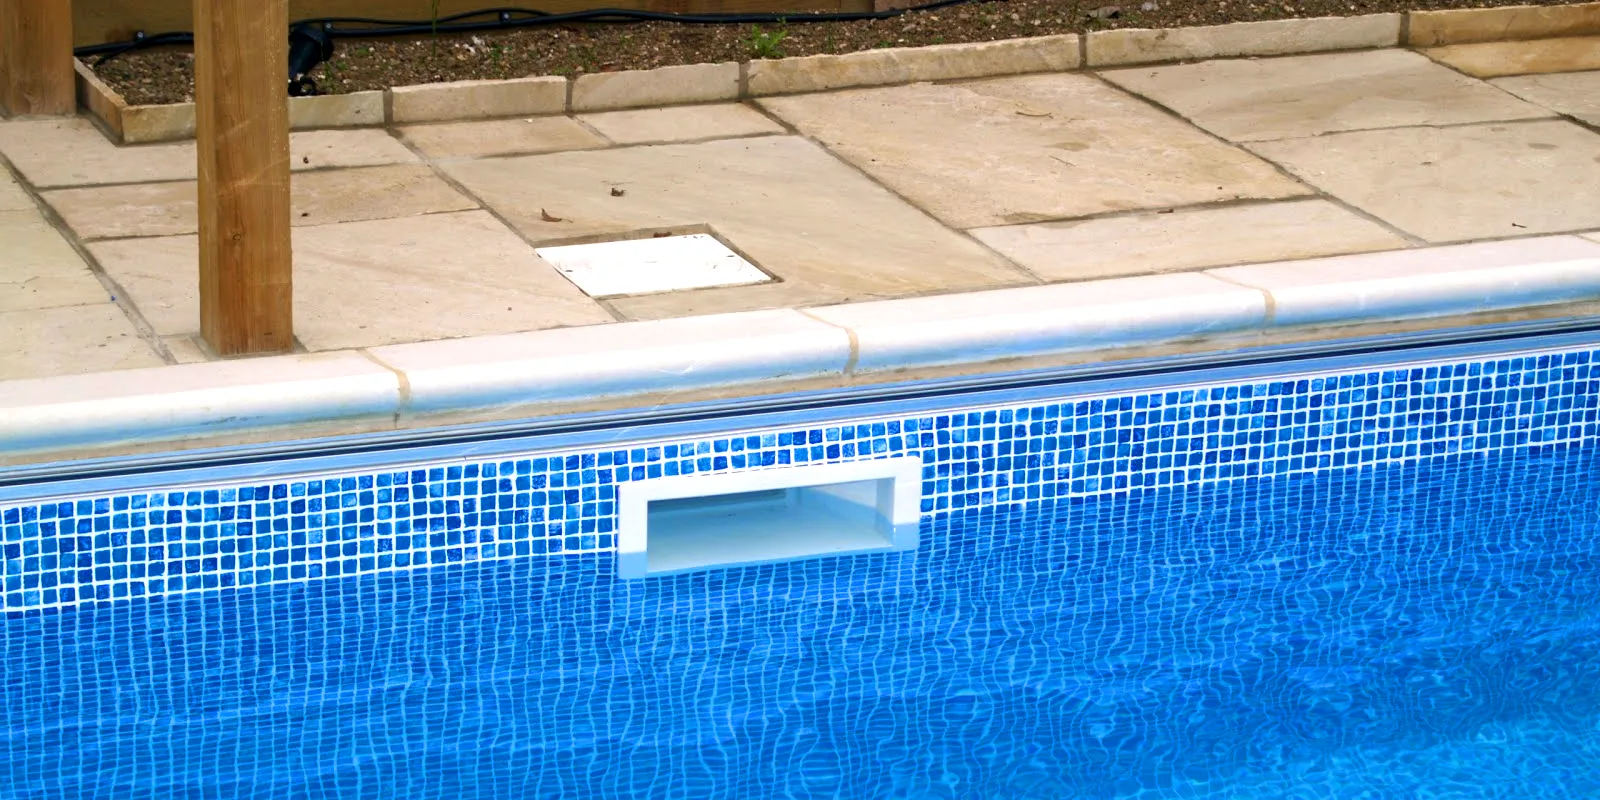 7 Dicas para Cuidar da sua Piscina no Inverno - Mantenha sua piscina limpa e protegida durante o inverno para o próximo dia de uso